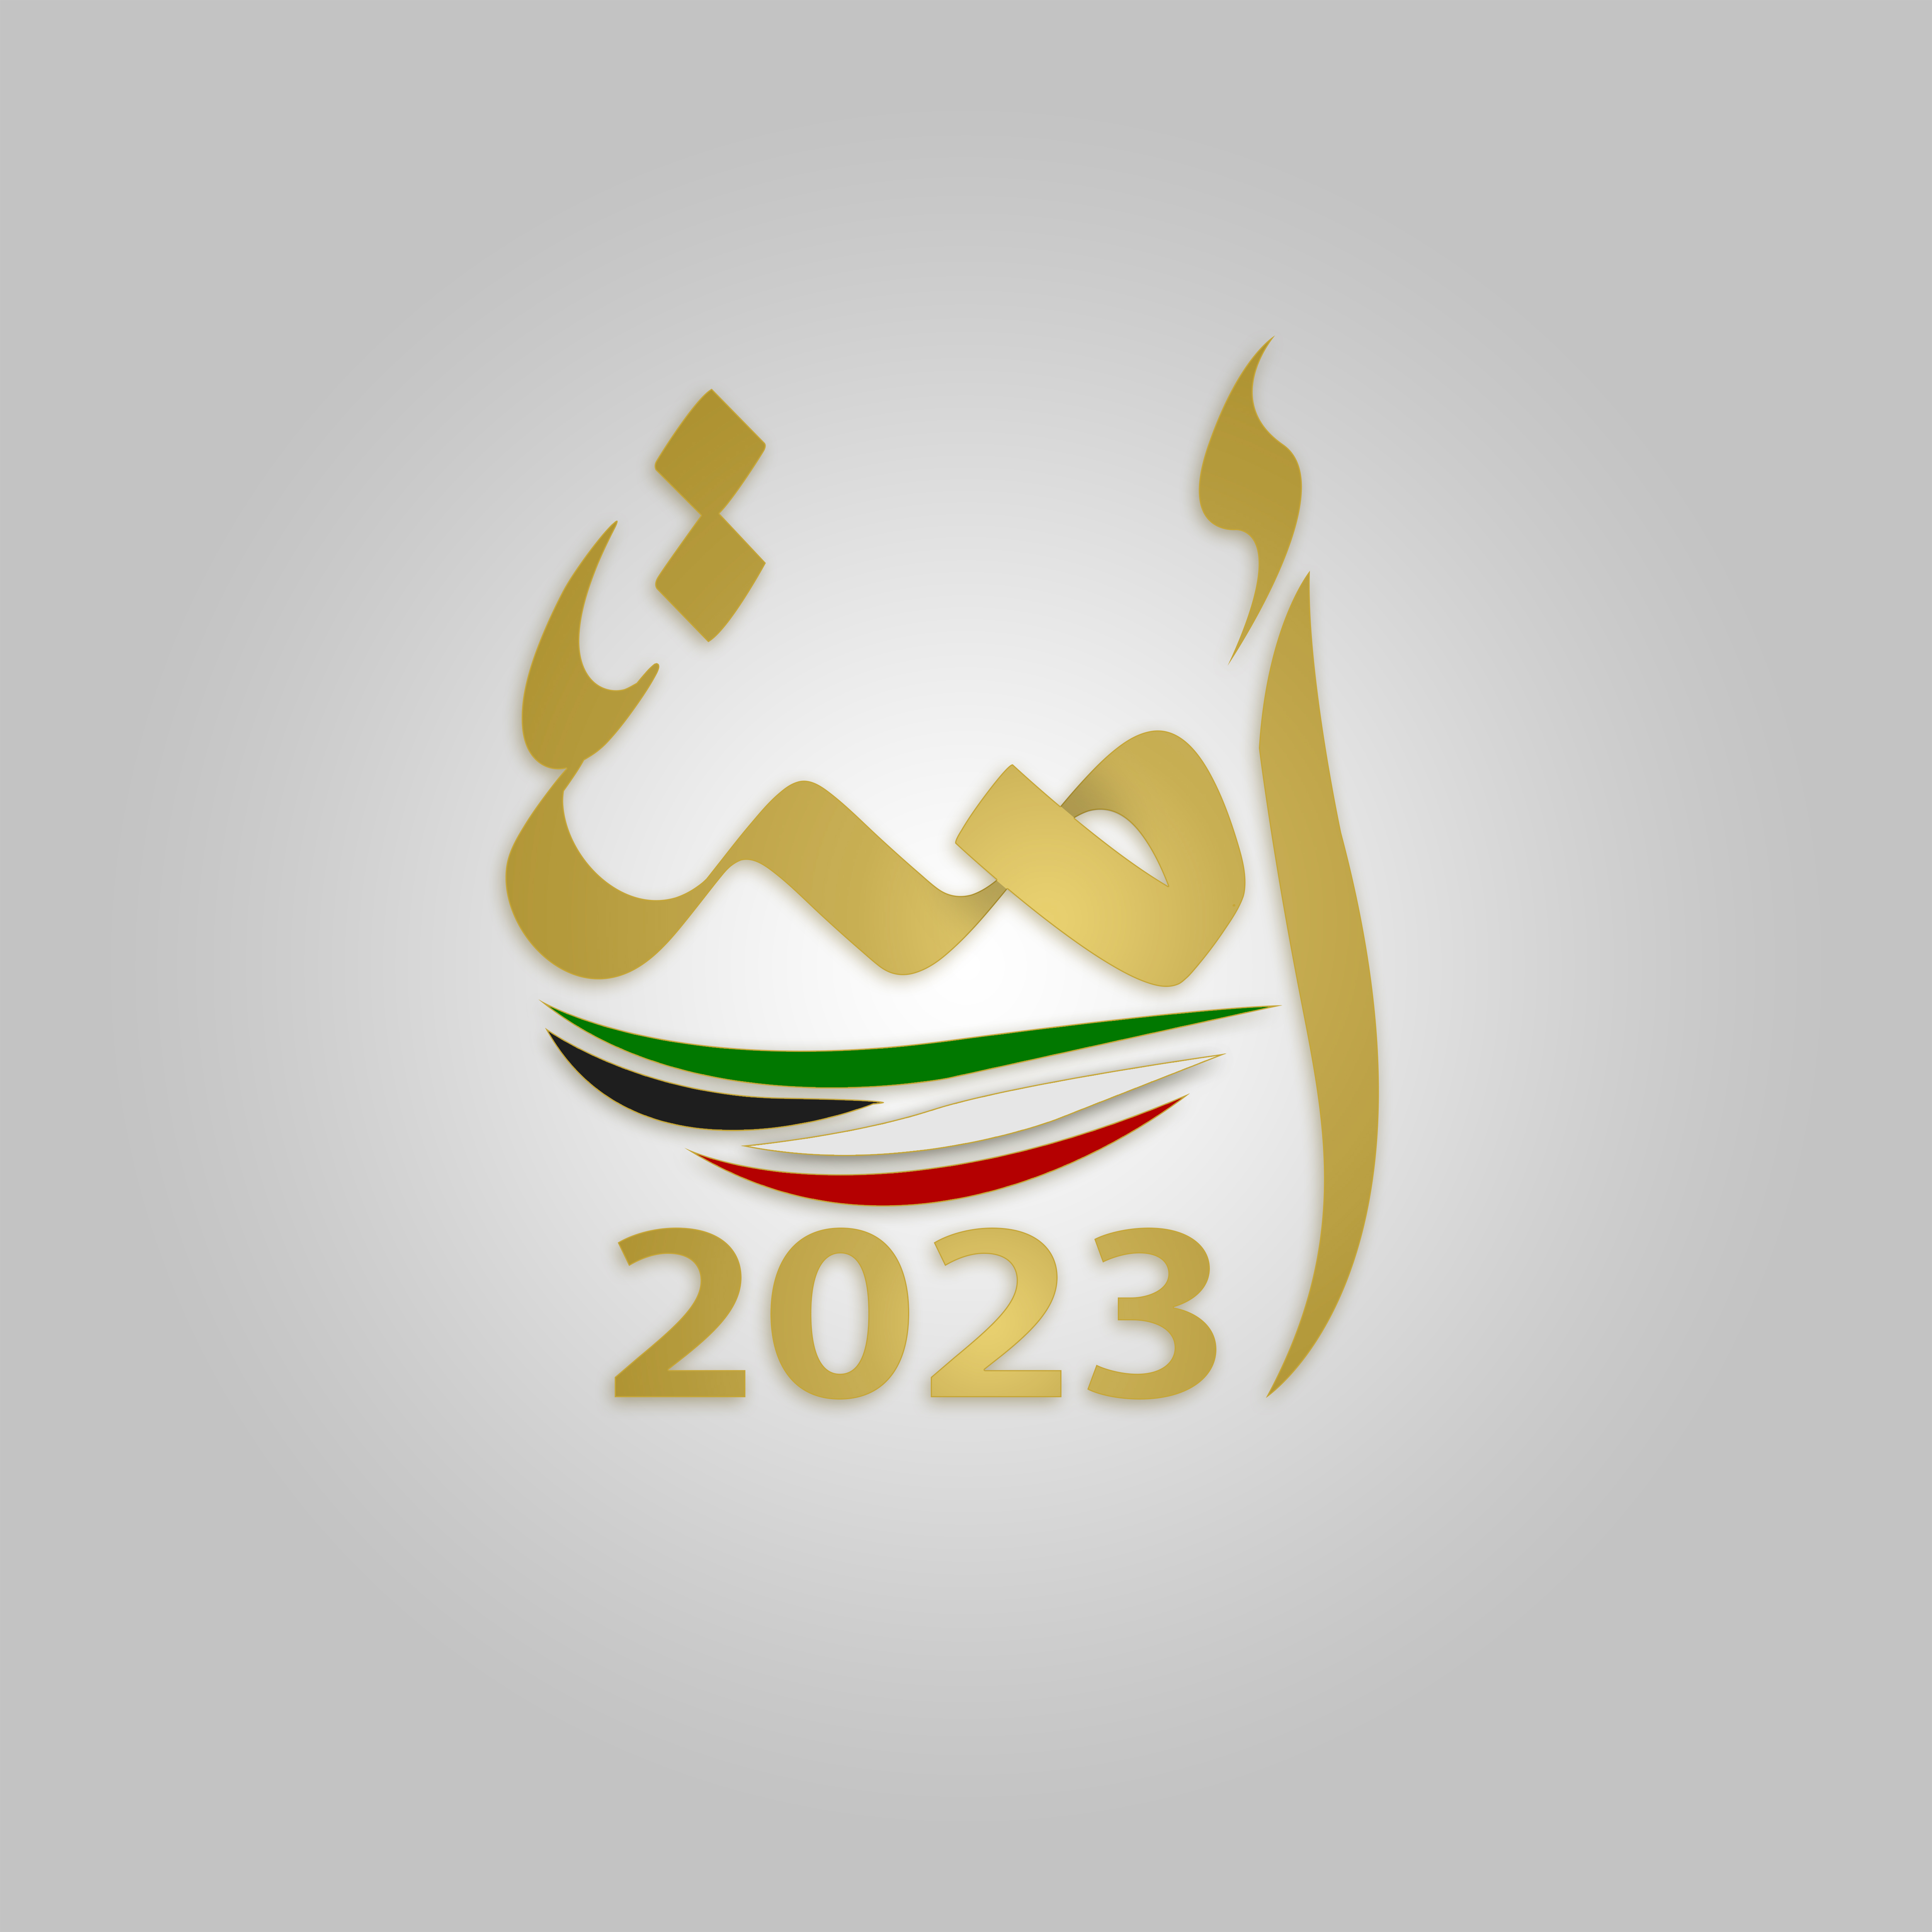 السير الذاتية للفائزين بعضوية مجلس الأمة الكويتي (أمة 2023) عن الدائرة الانتخابية الثانية